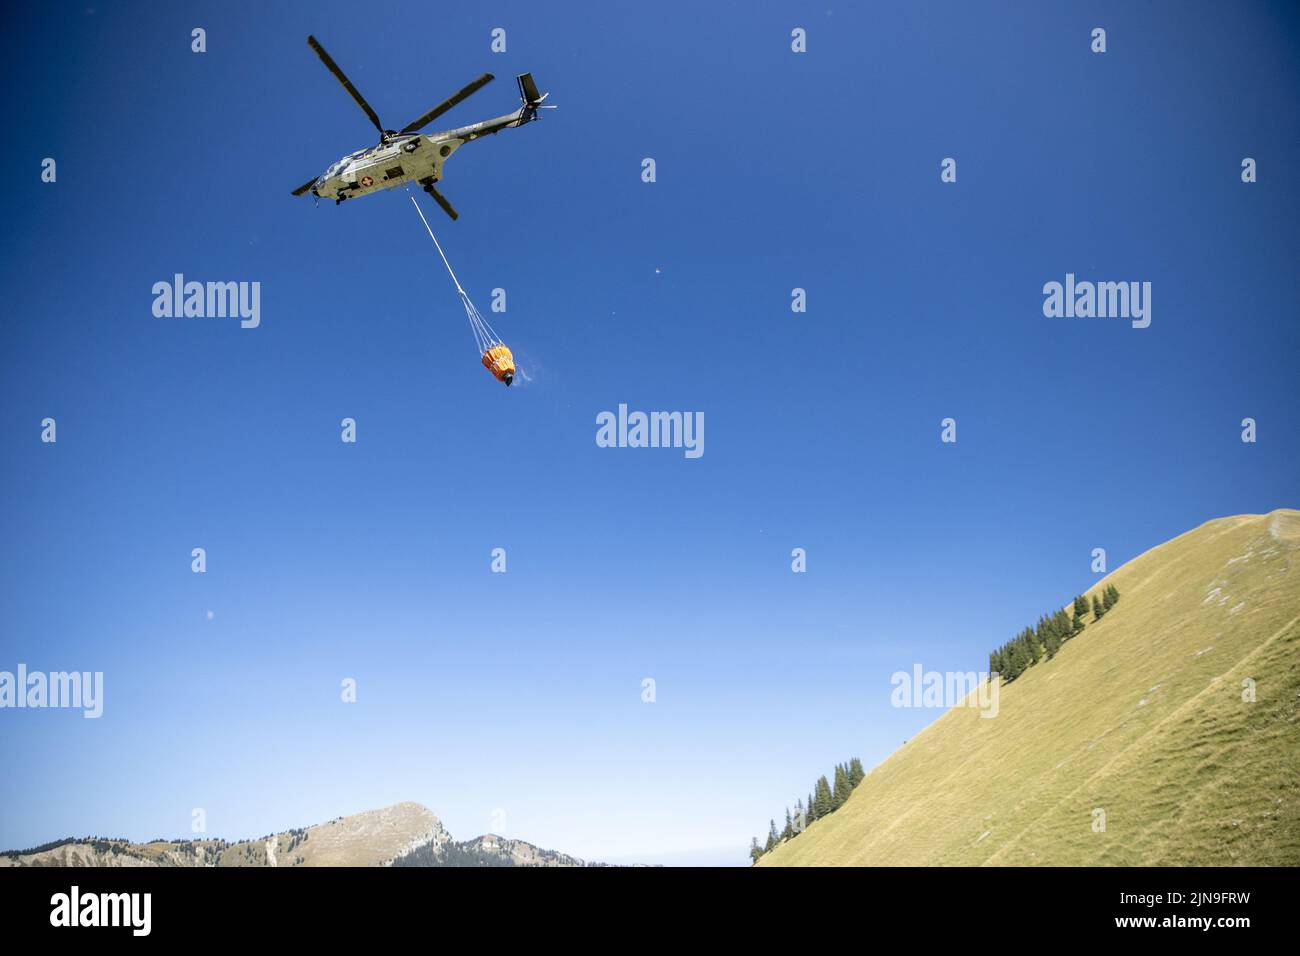 Super puma helicopter e imágenes alta resolución - Página 9 - Alamy